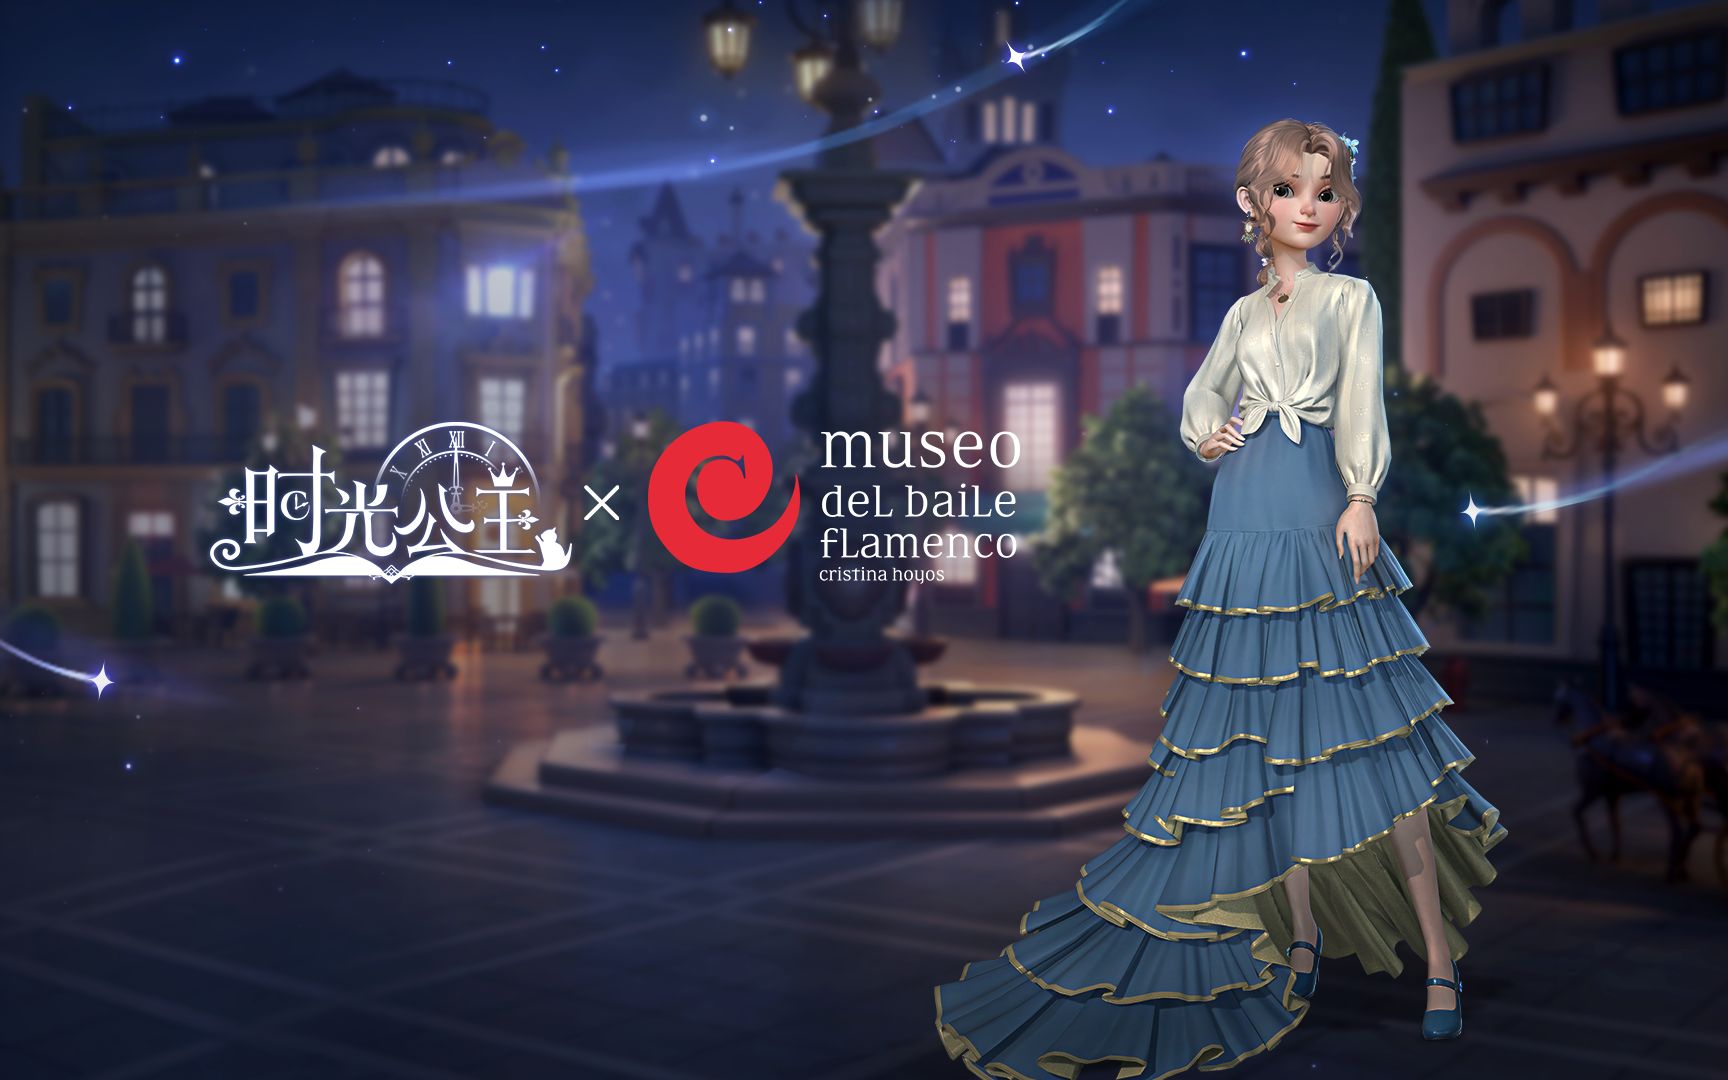 《时光公主》x 世界非物质文化遗产Flamenco舞蹈艺术官方博物馆 Museo del Baile Flamenco联动暨《时光公主》周年生日庆典活动正式开启